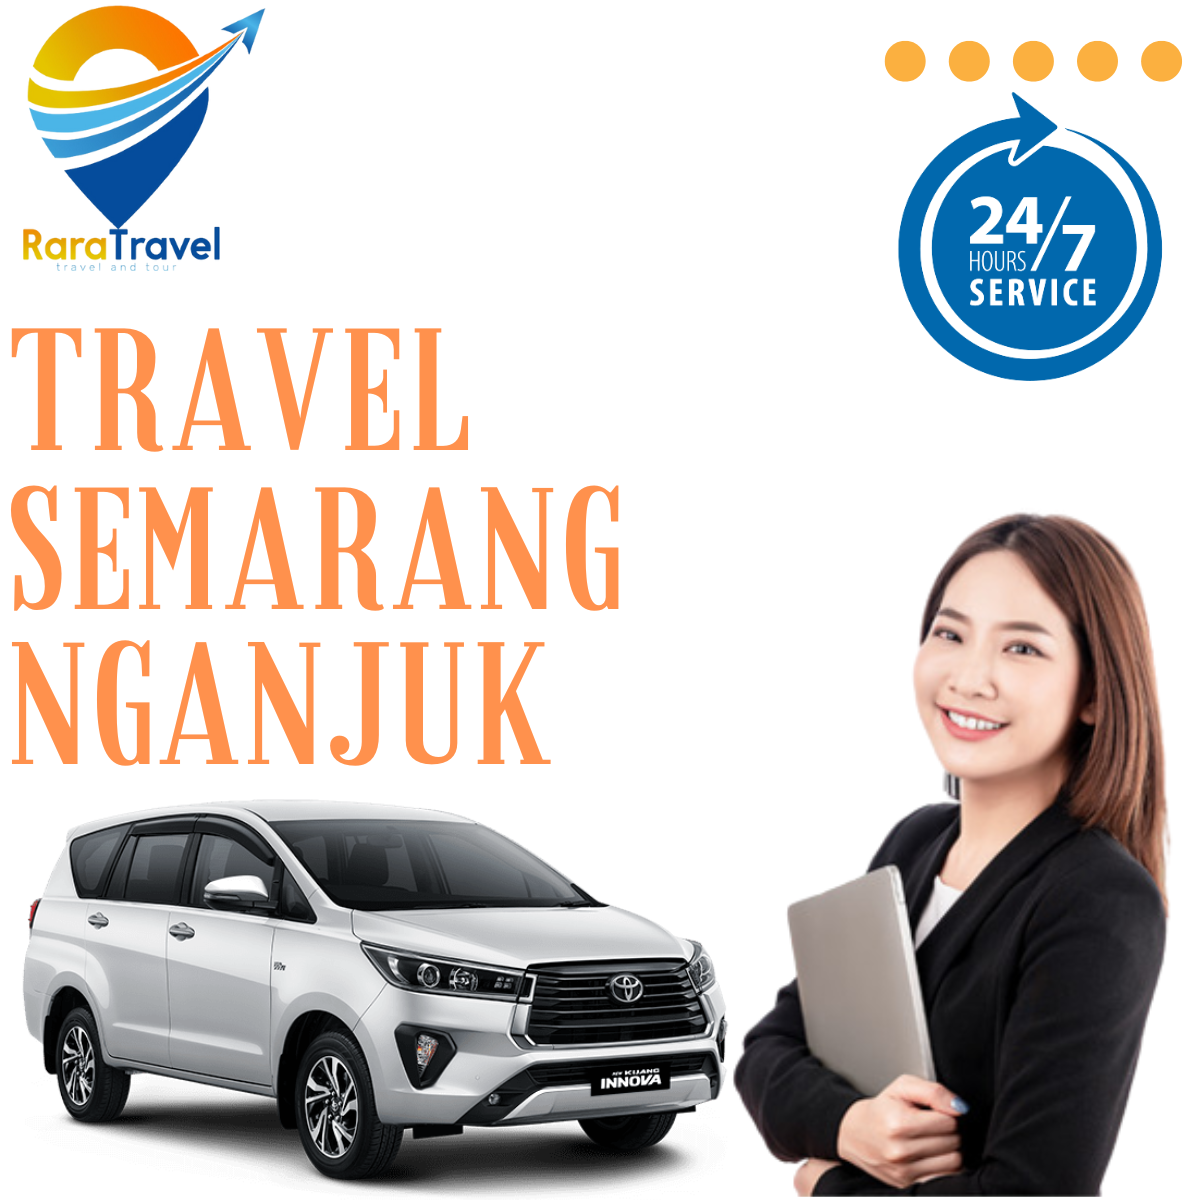 Travel Semarang Nganjuk PP Murah Hiace - RARATRAVEL.ID